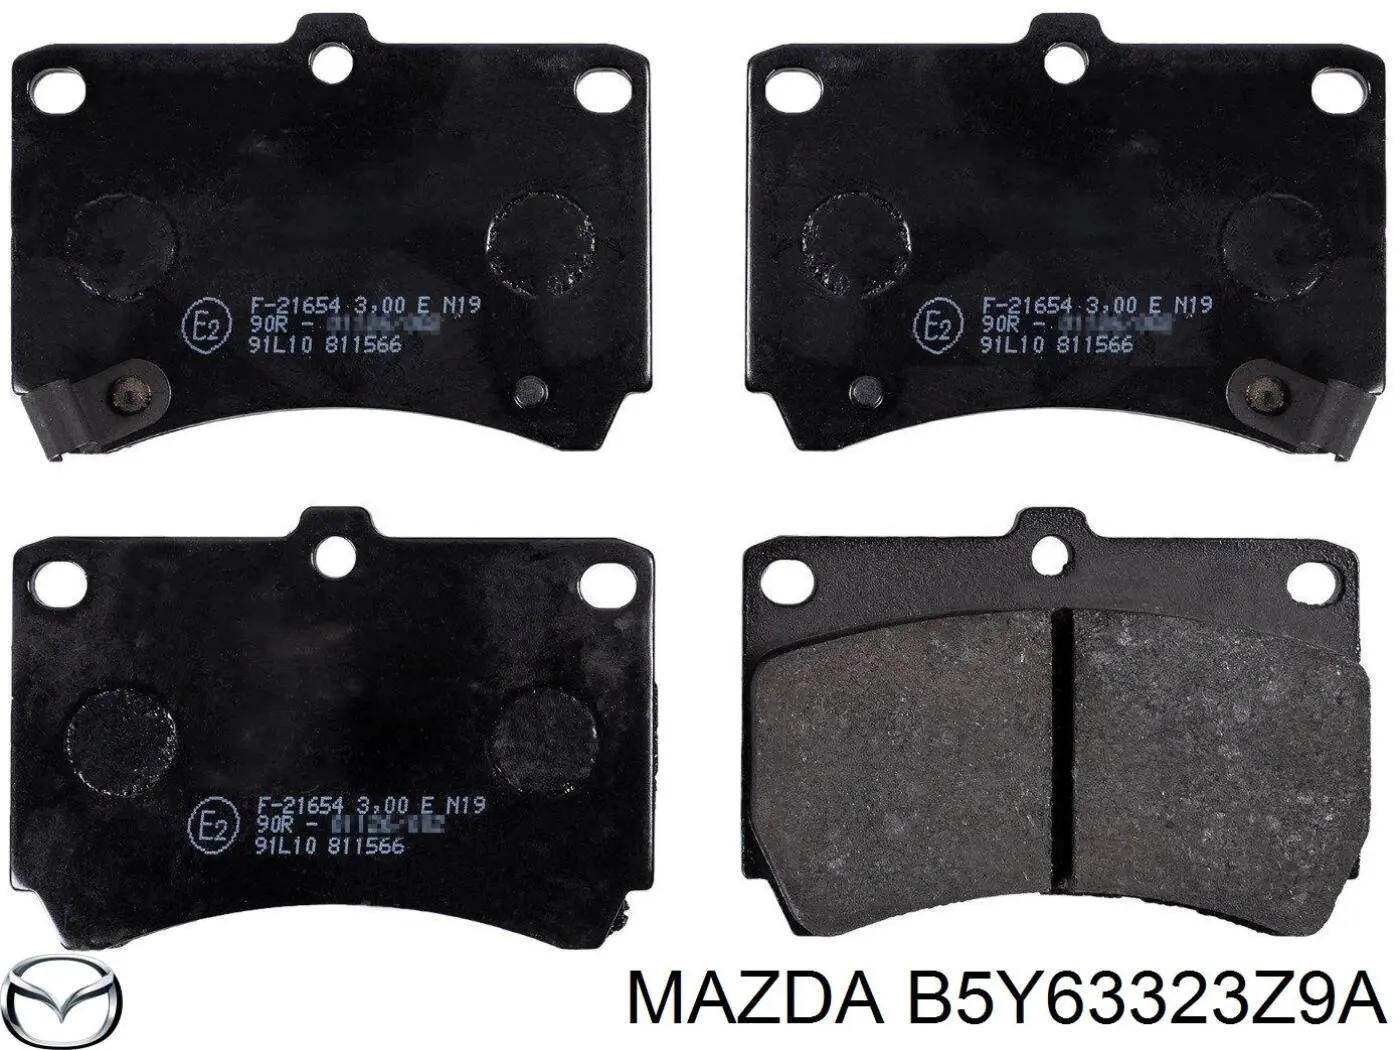 B5Y63323Z9A Mazda pastillas de freno delanteras